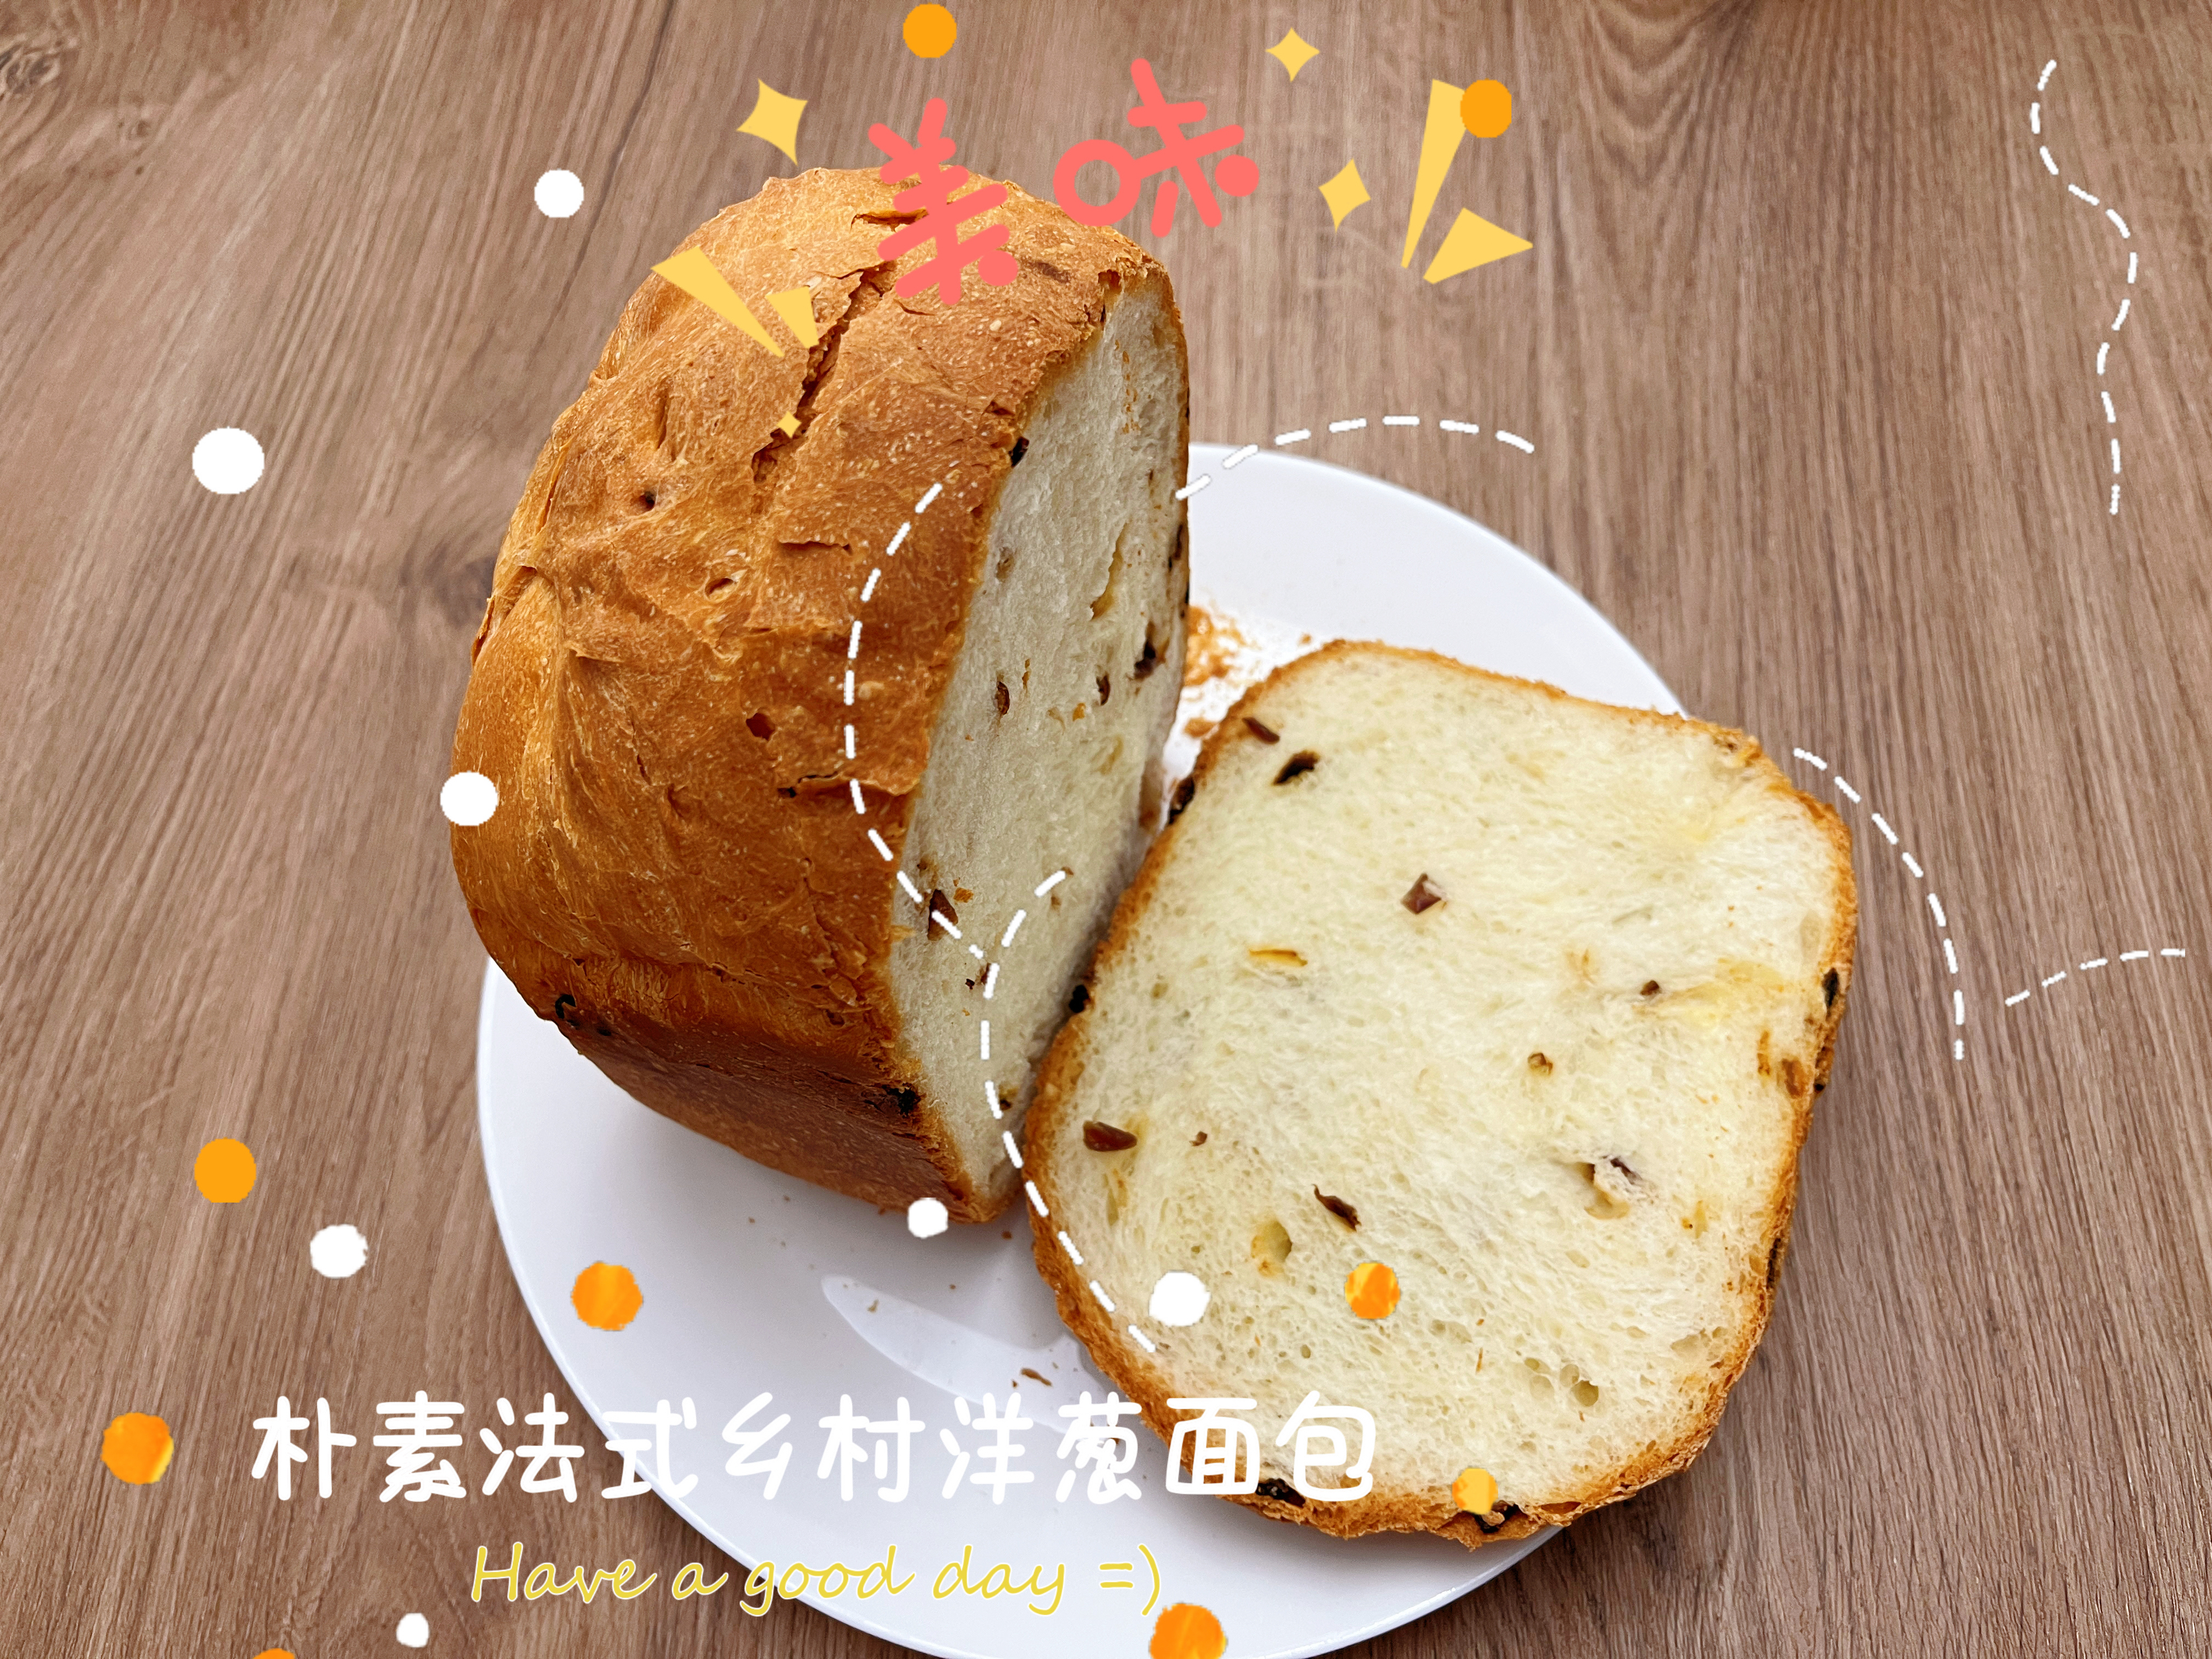 朴素法式乡村洋葱面包-松下/panasonic面包机版